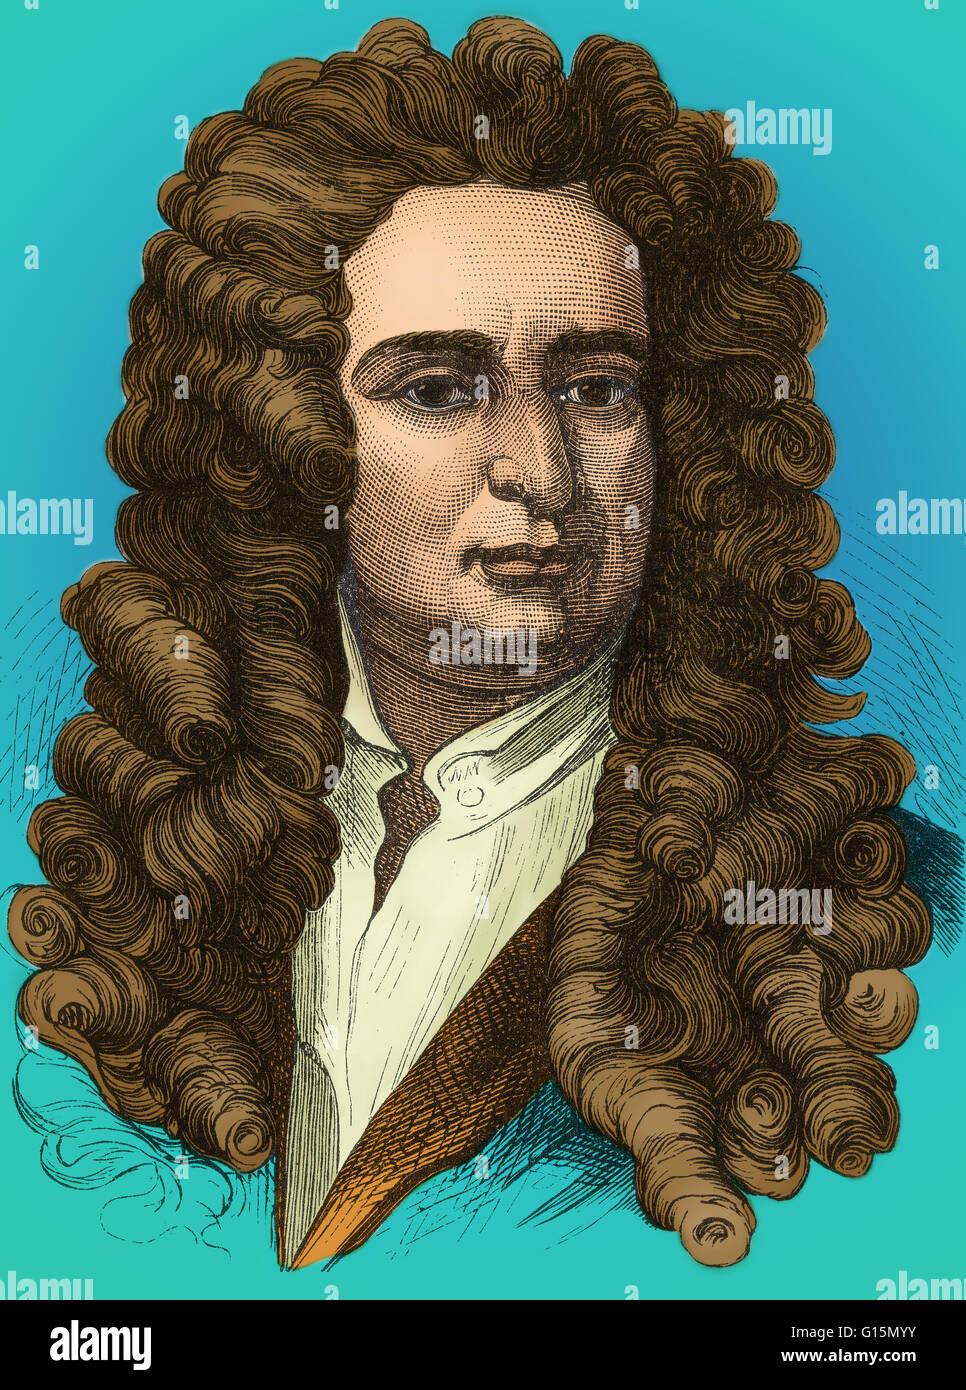 Isaac Newton (25 décembre 1642 - 20 mars 1727) était un physicien, mathématicien, astronome, philosophe naturel, alchimiste, et théologien. Sa monographie Philosophae Naturalis Principia Mathematica, publié en 1687, établit les bases pour m Banque D'Images